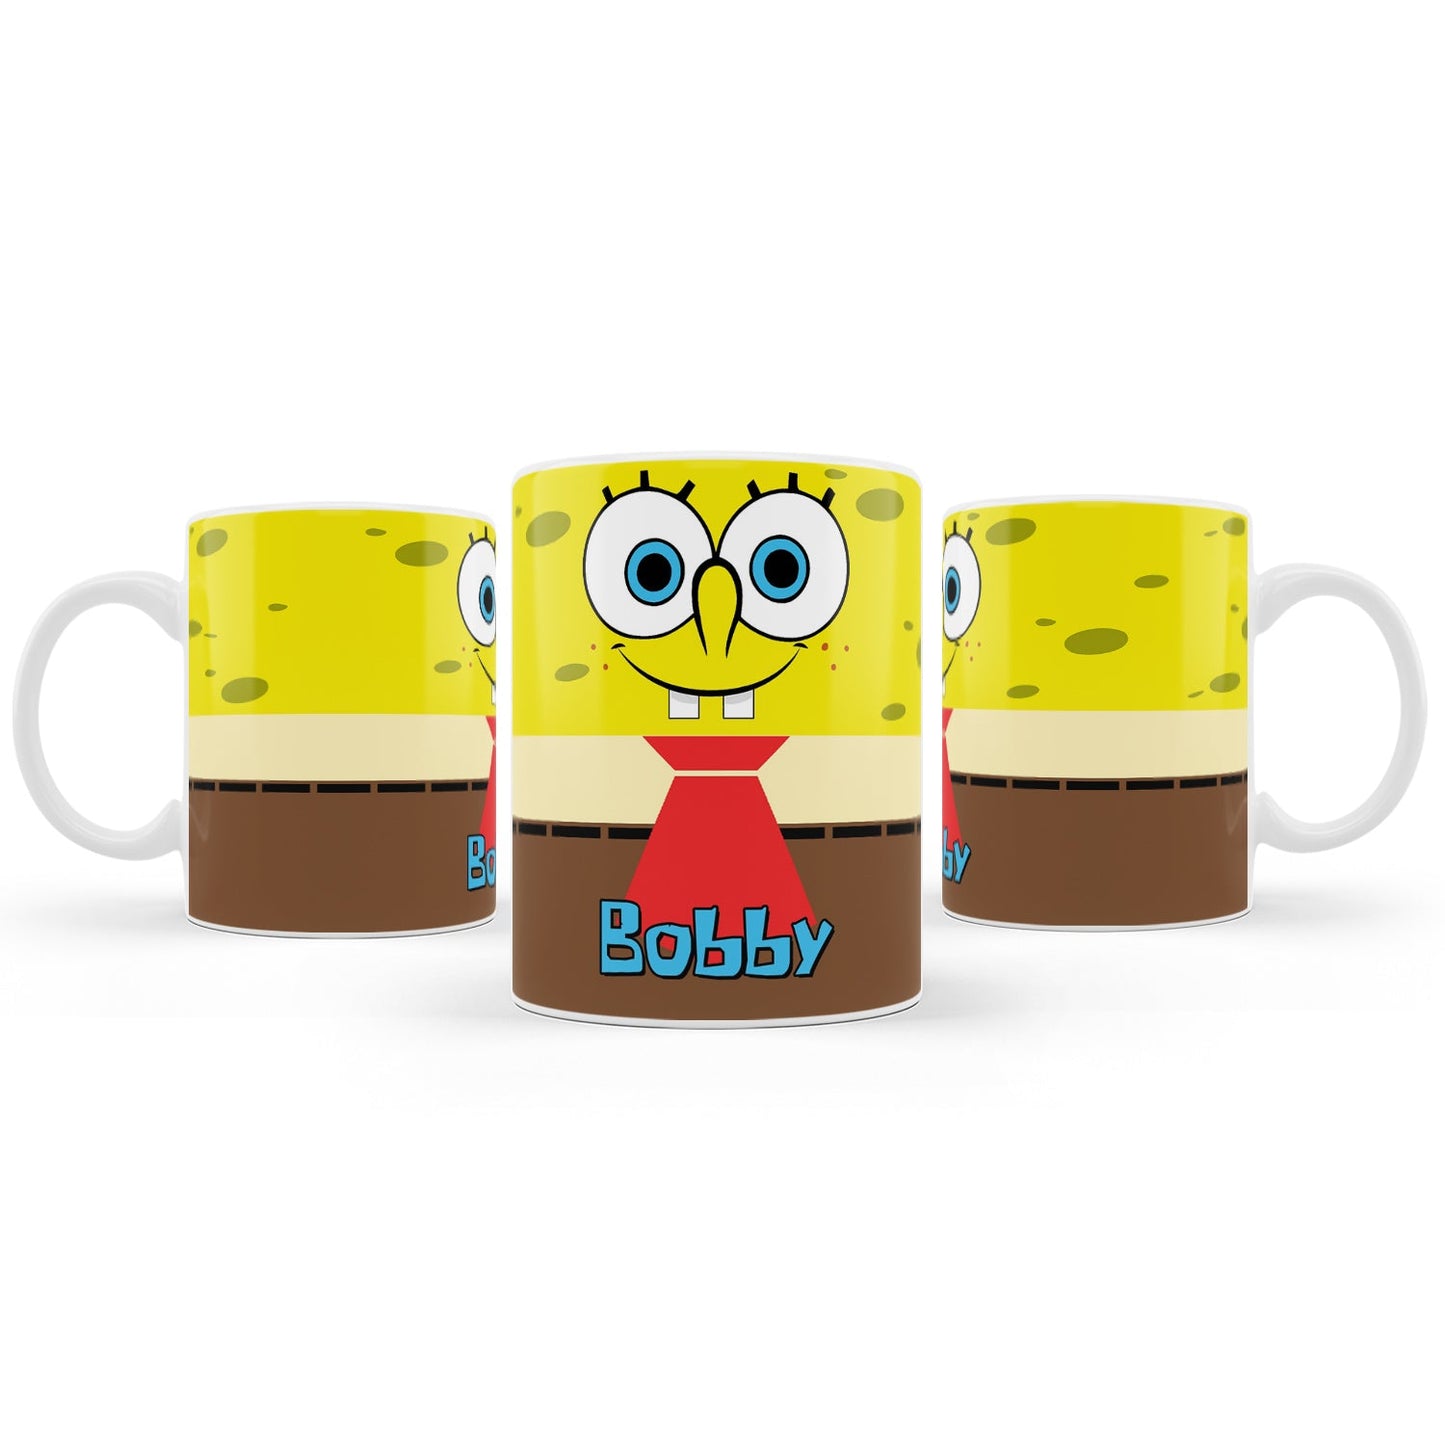 Spongebob themed sublimation mugs